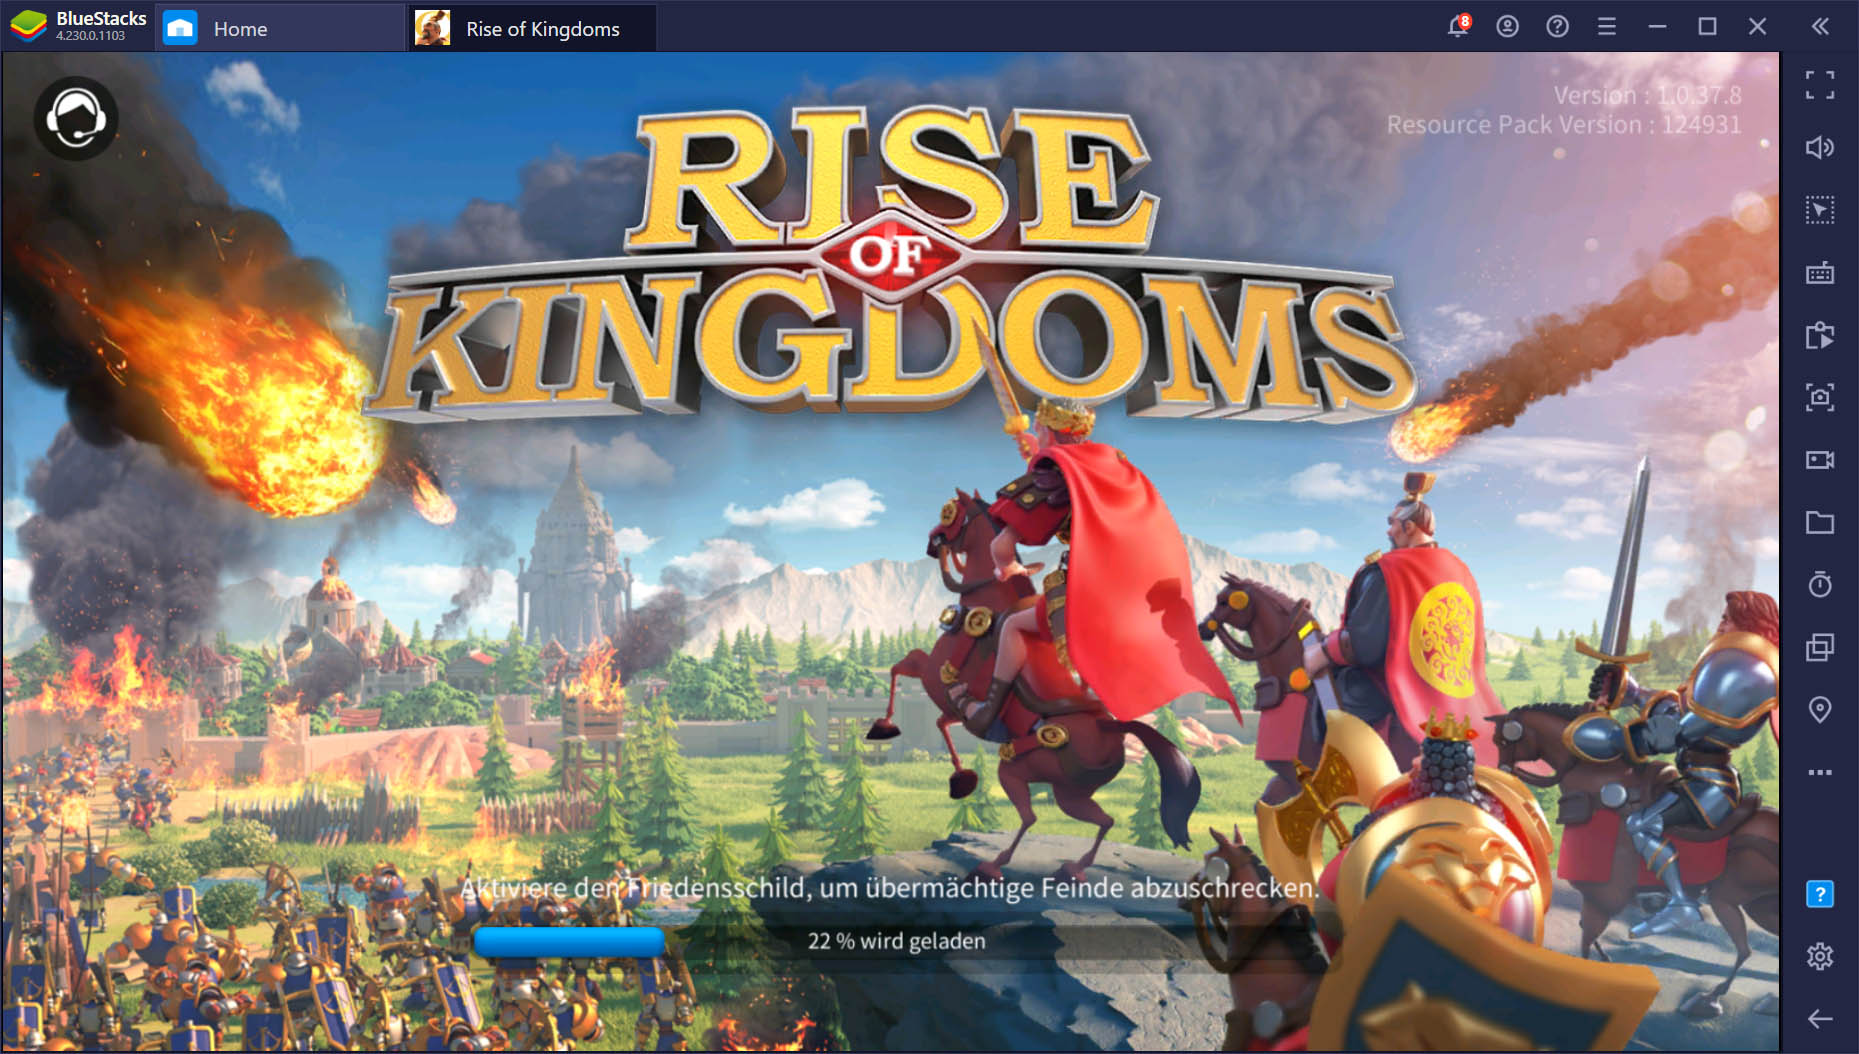 Rise of Kingdoms – Häufige Kontoprobleme beim Spielen auf mehreren Geräten